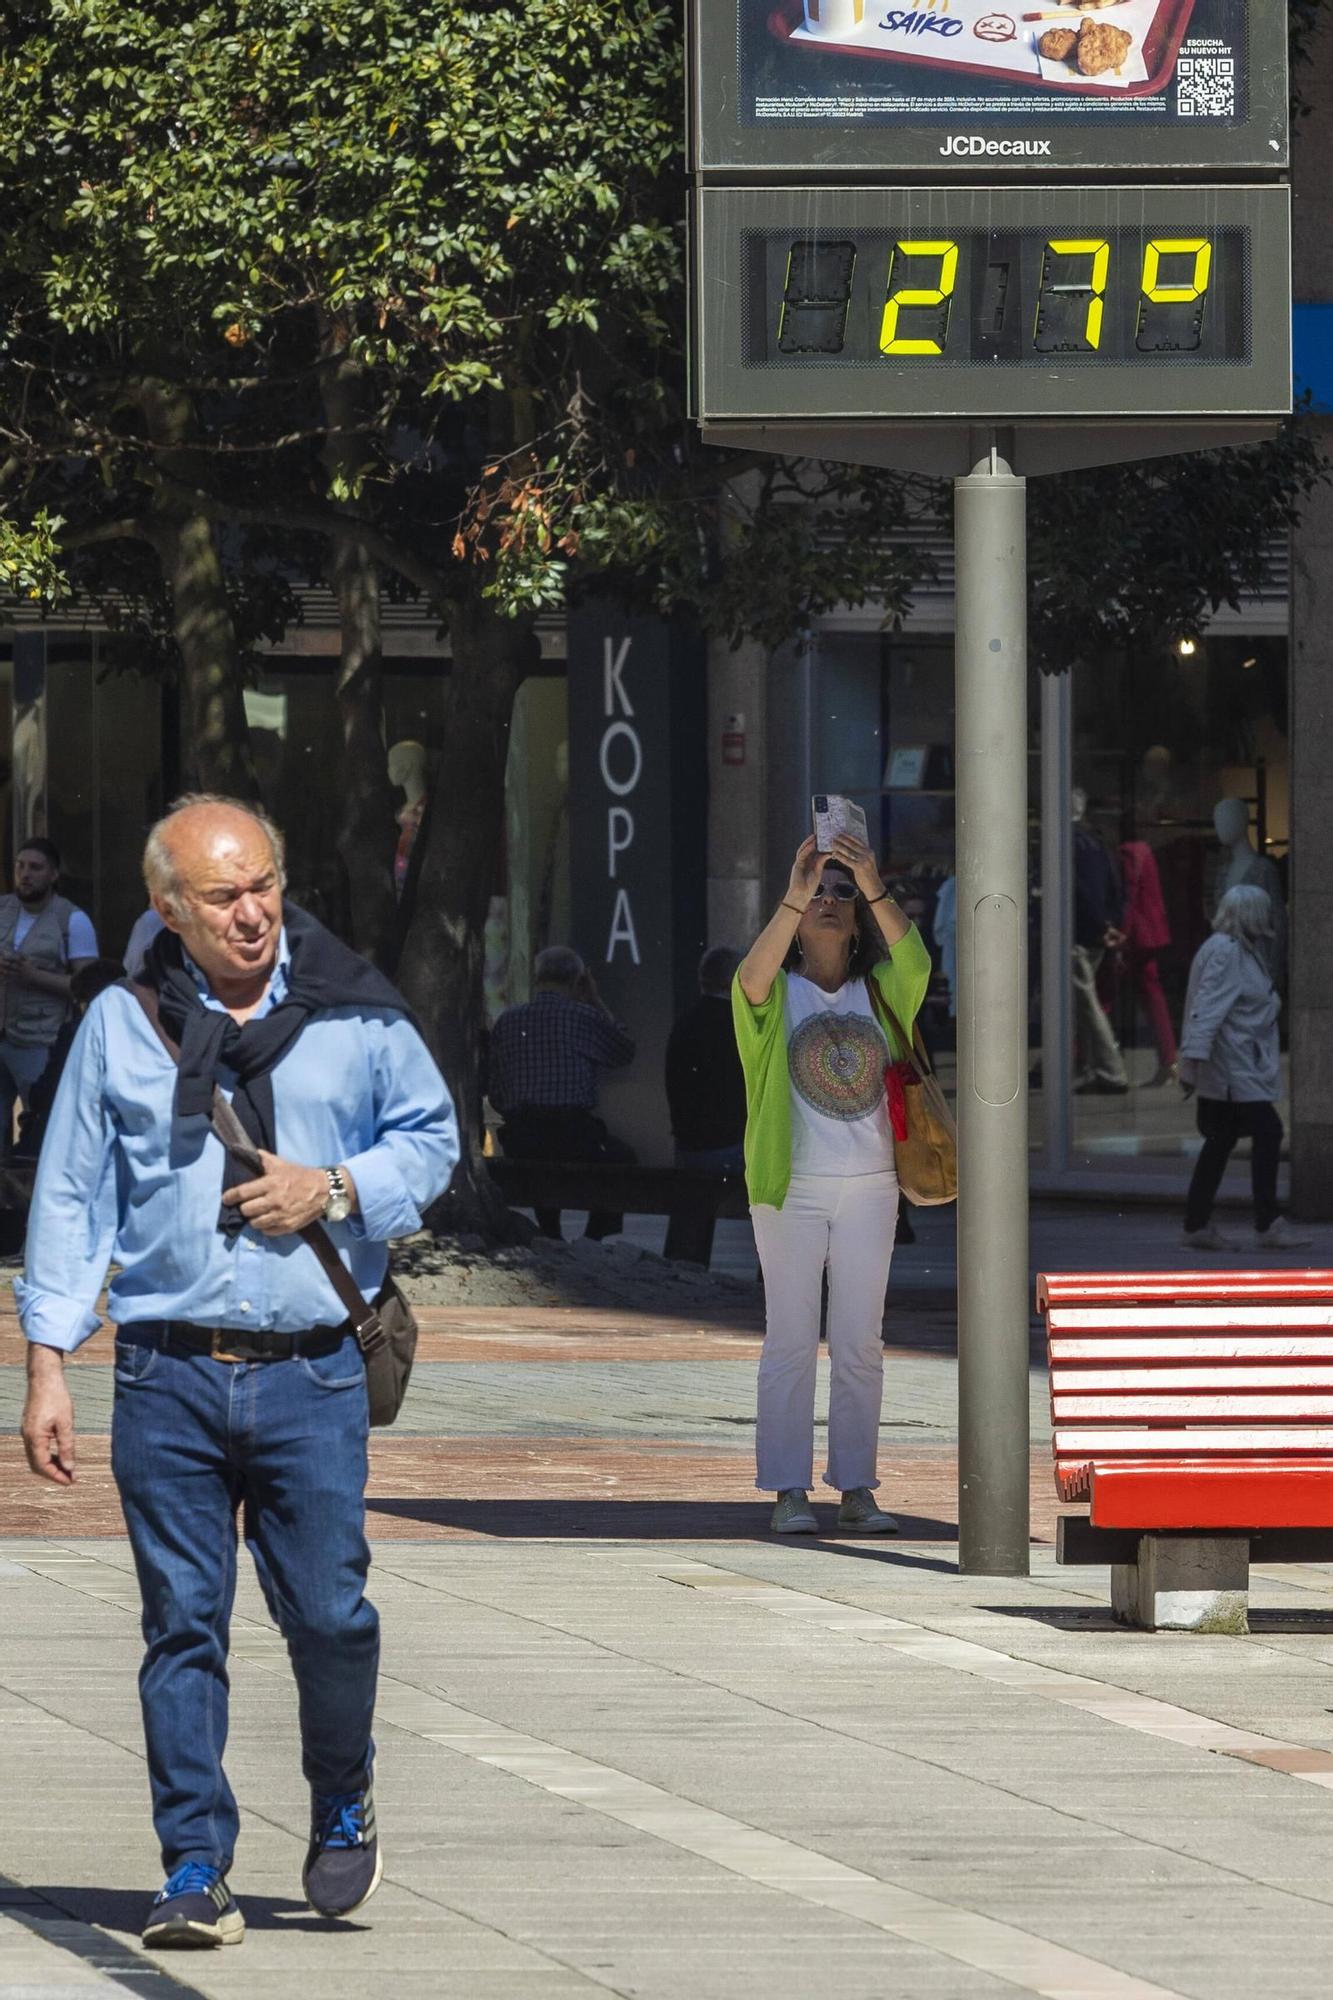 La primavera adquiere tintes veraniegos en Asturias: así fue la jornada de calor en Oviedo